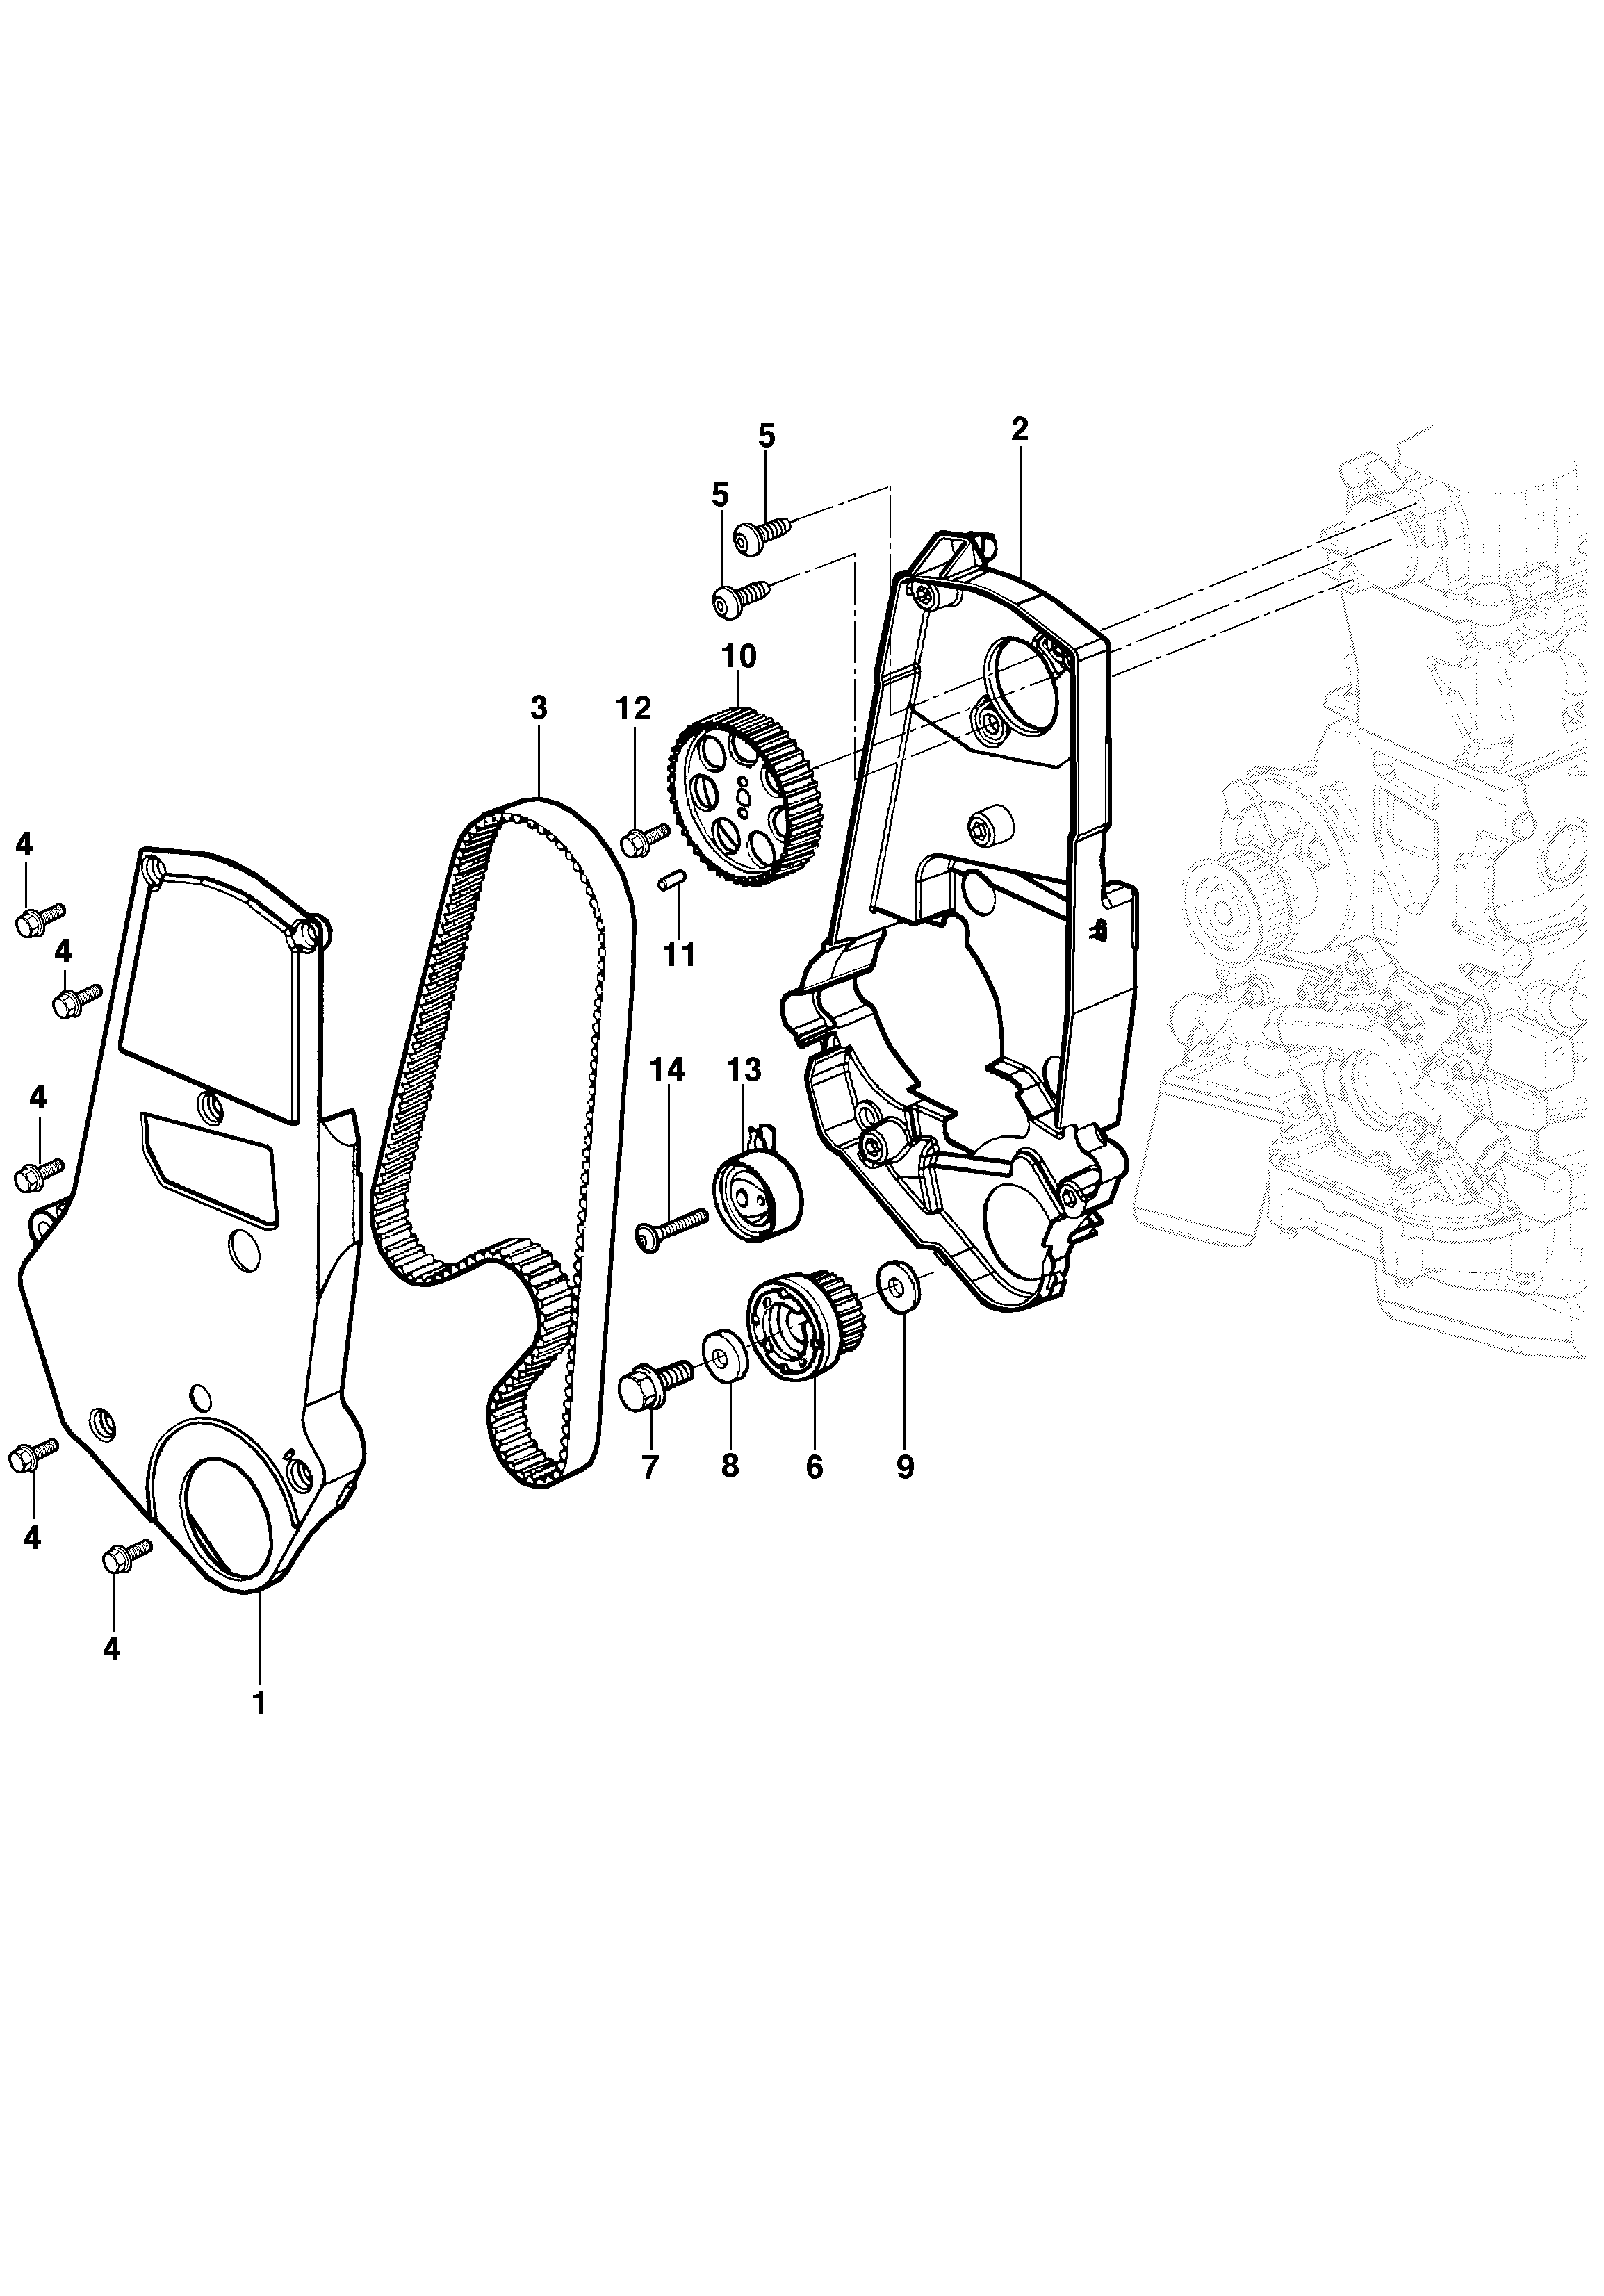 Engine timing - 8V engine